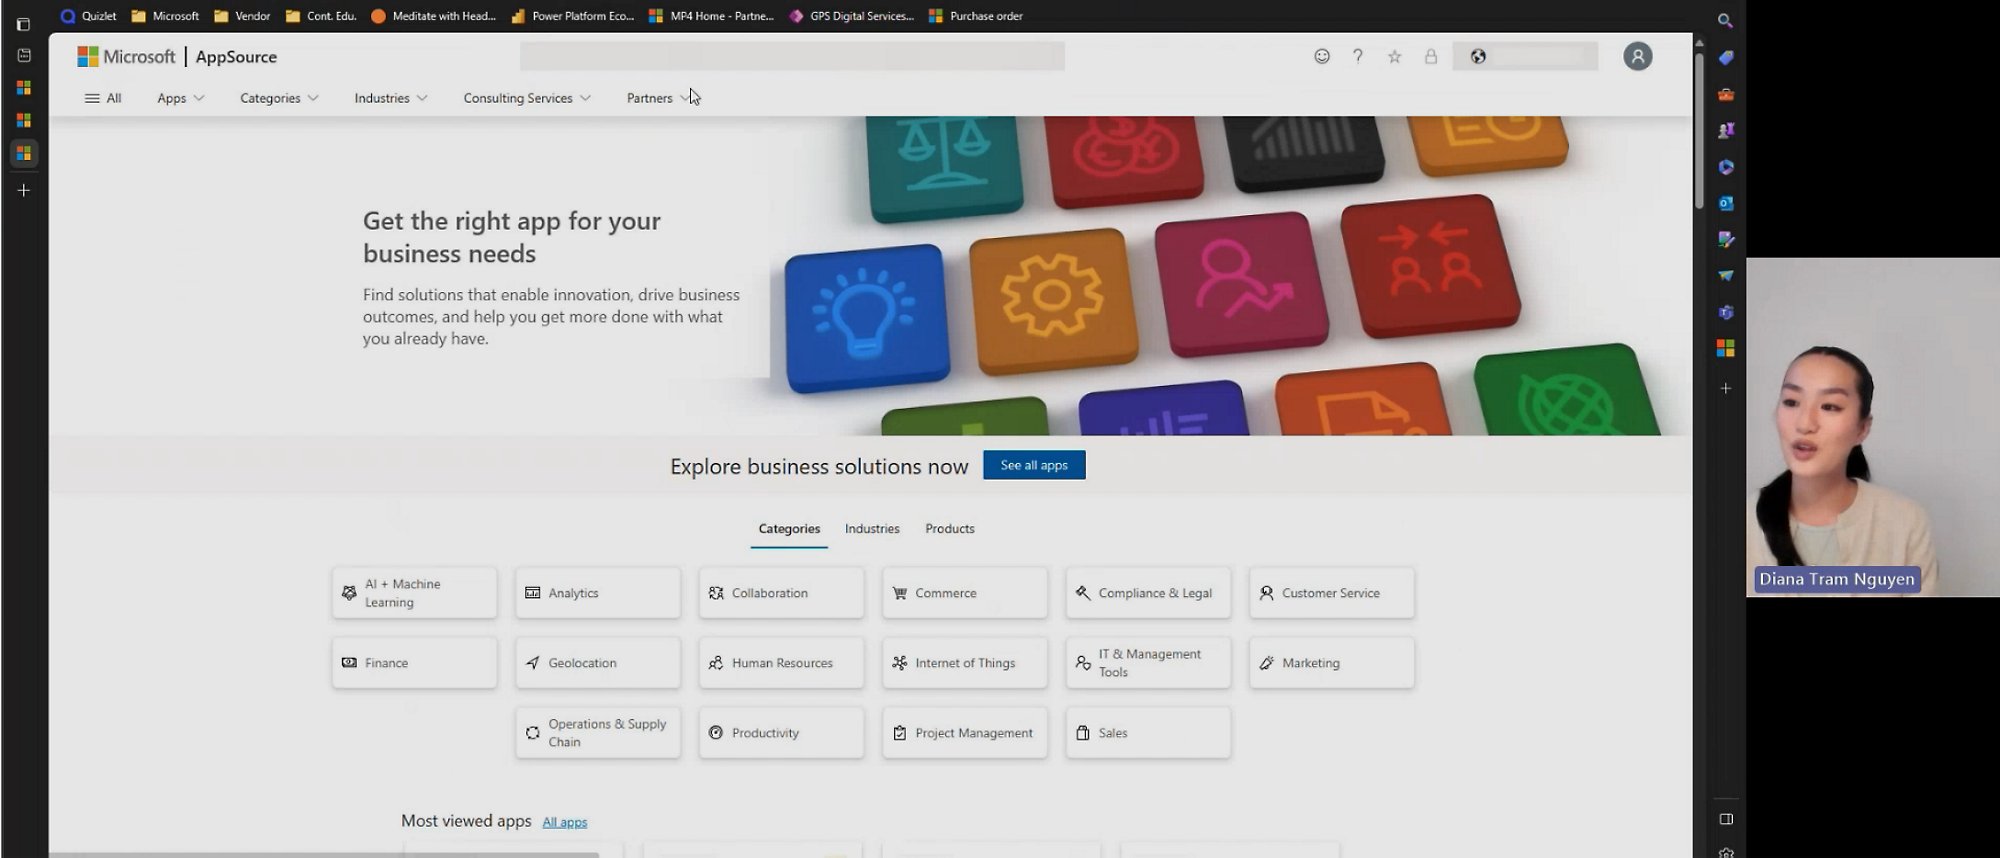 Una captura de pantalla de un vídeo en el que se muestra una página de Microsoft AppSource relacionada con la exploración de soluciones empresariales